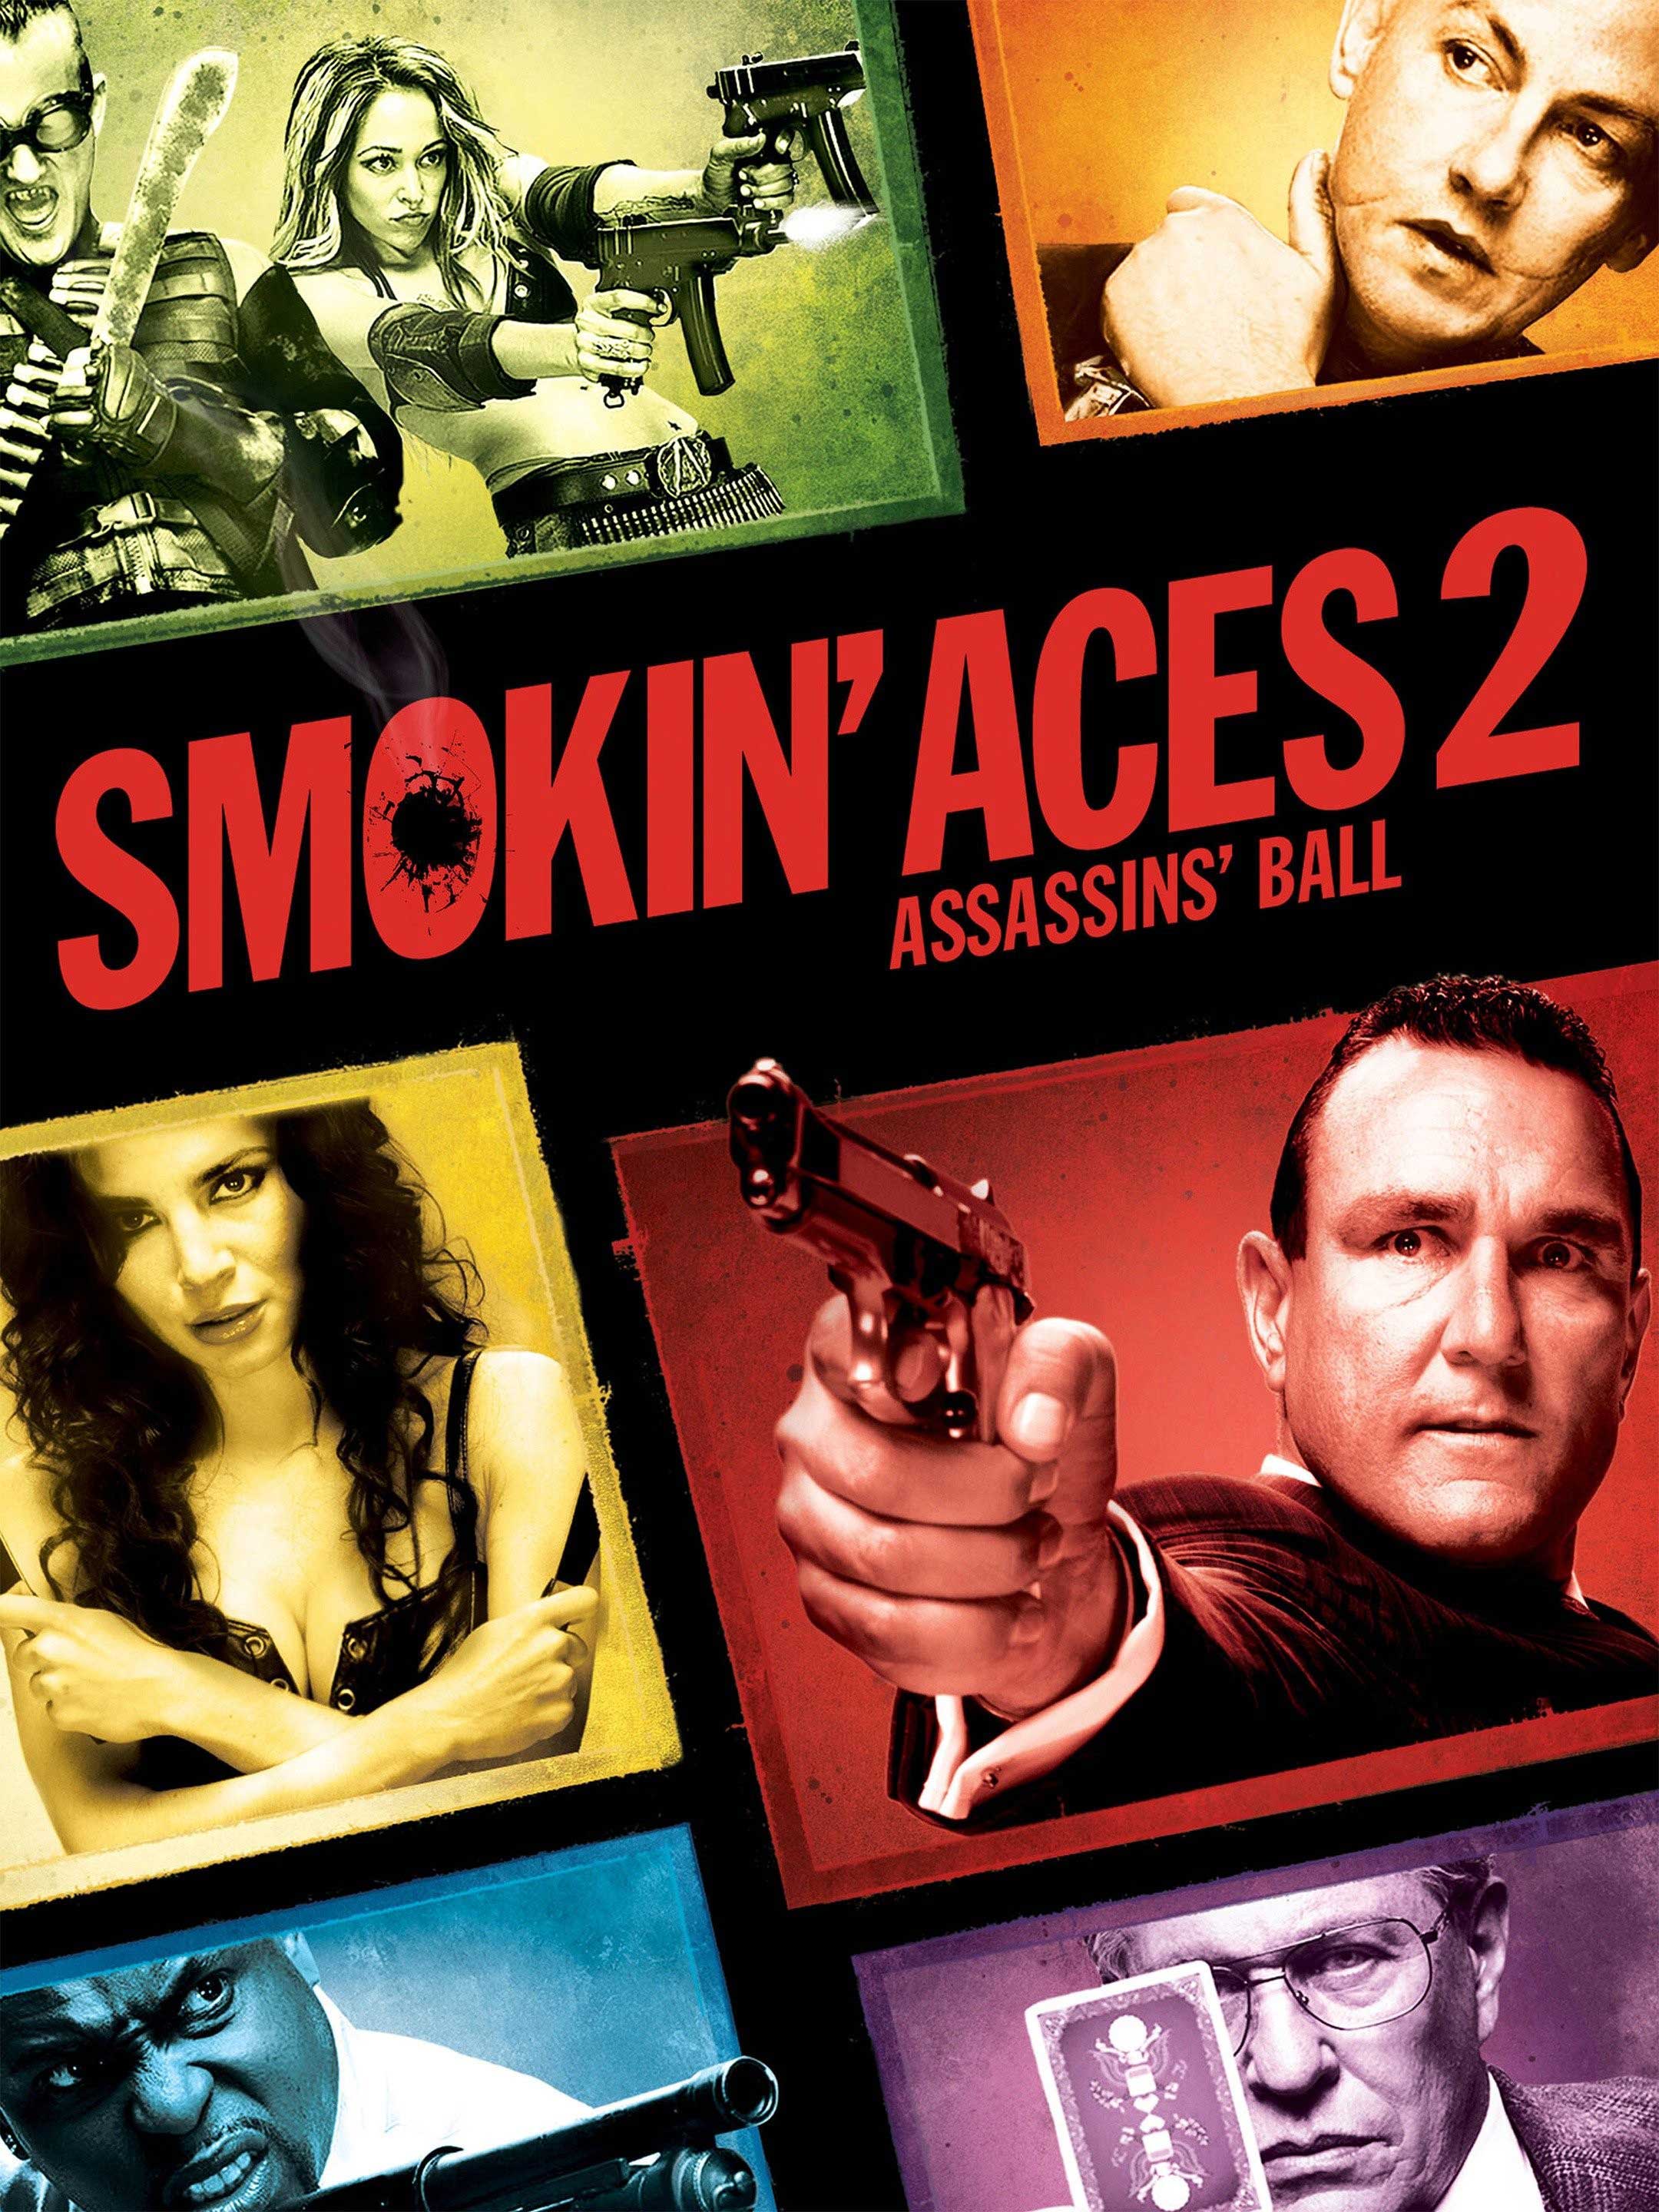 ดูหนังออนไลน์ เรื่อง Smokin Aces 2 Assassins Ball (2010) ดวลเดือด ล้างเลือดมาเฟีย 2 เดิมพันฆ่า ล่าเอฟบีไอ พากย์ไทย